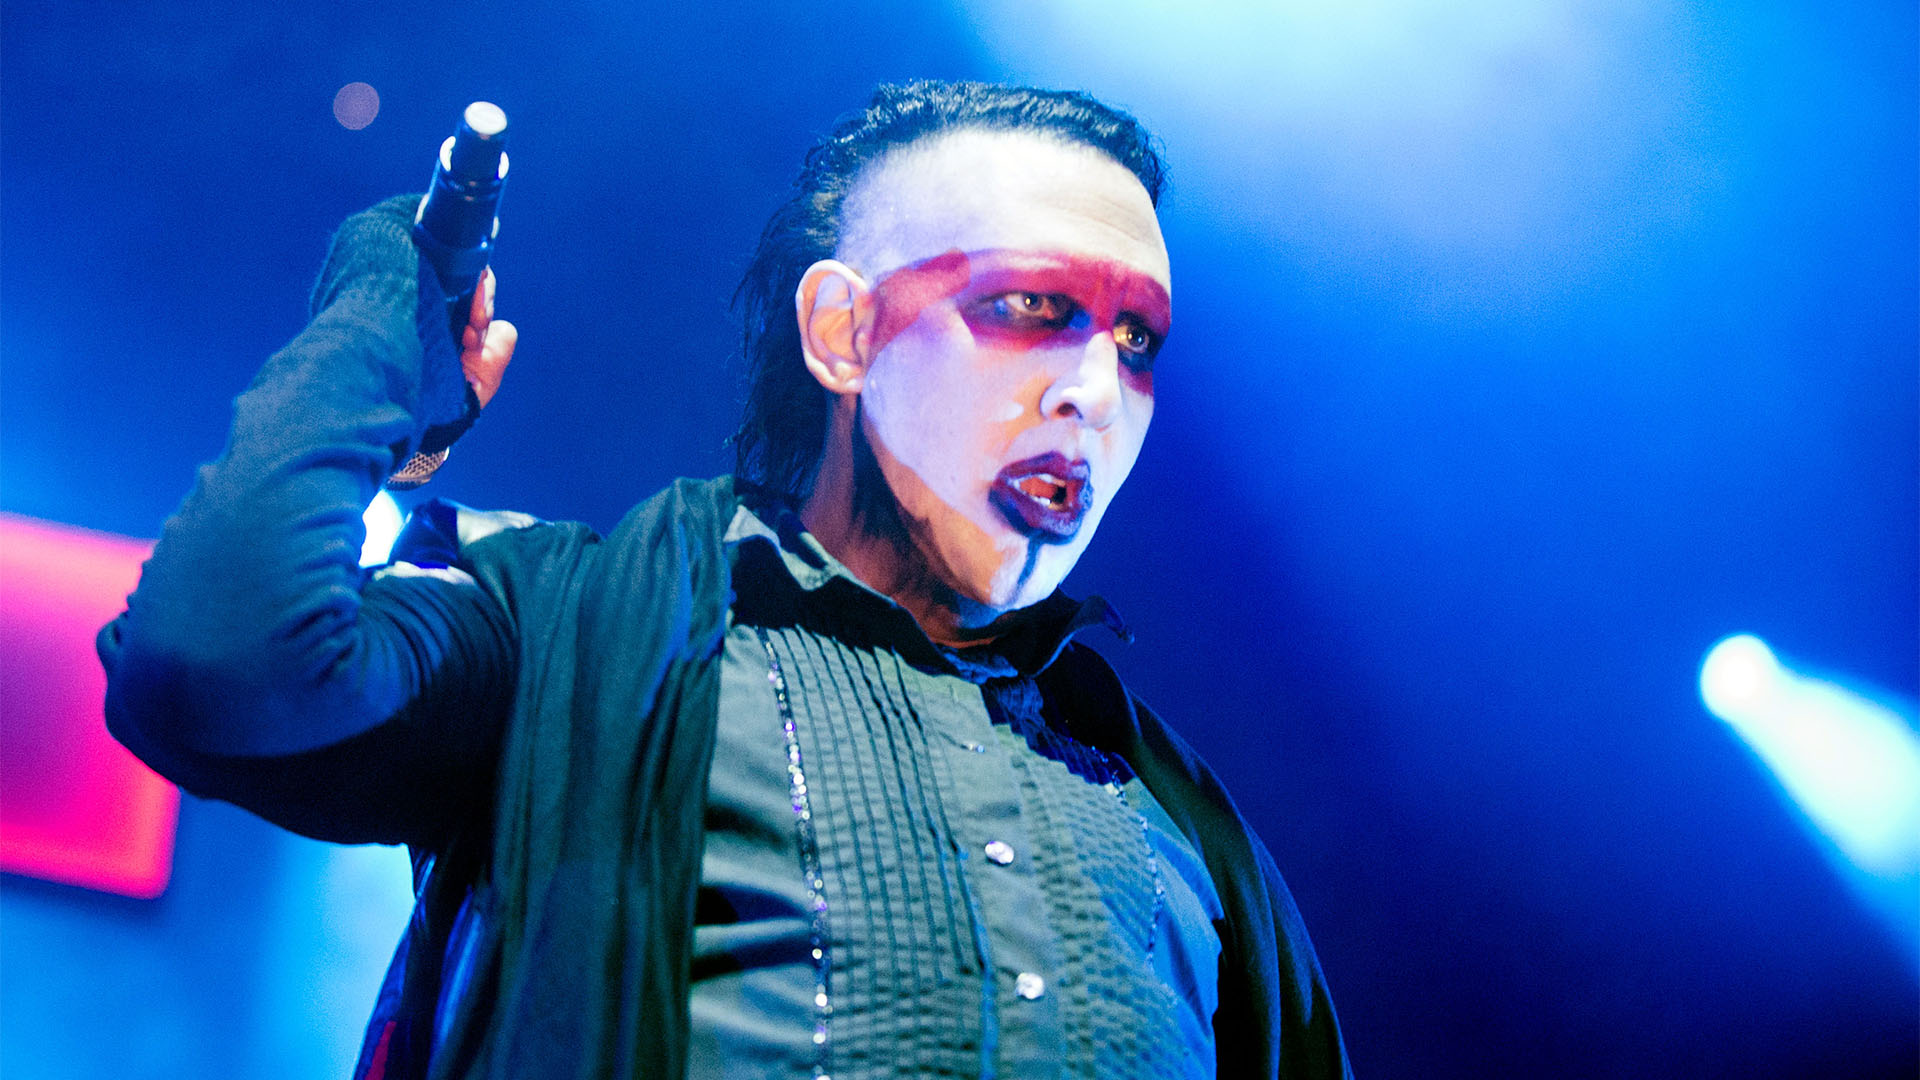 Denuncian que Marilyn Manson encerraba a mujeres en una celda de vidrio para maltratarlas psicológicamente